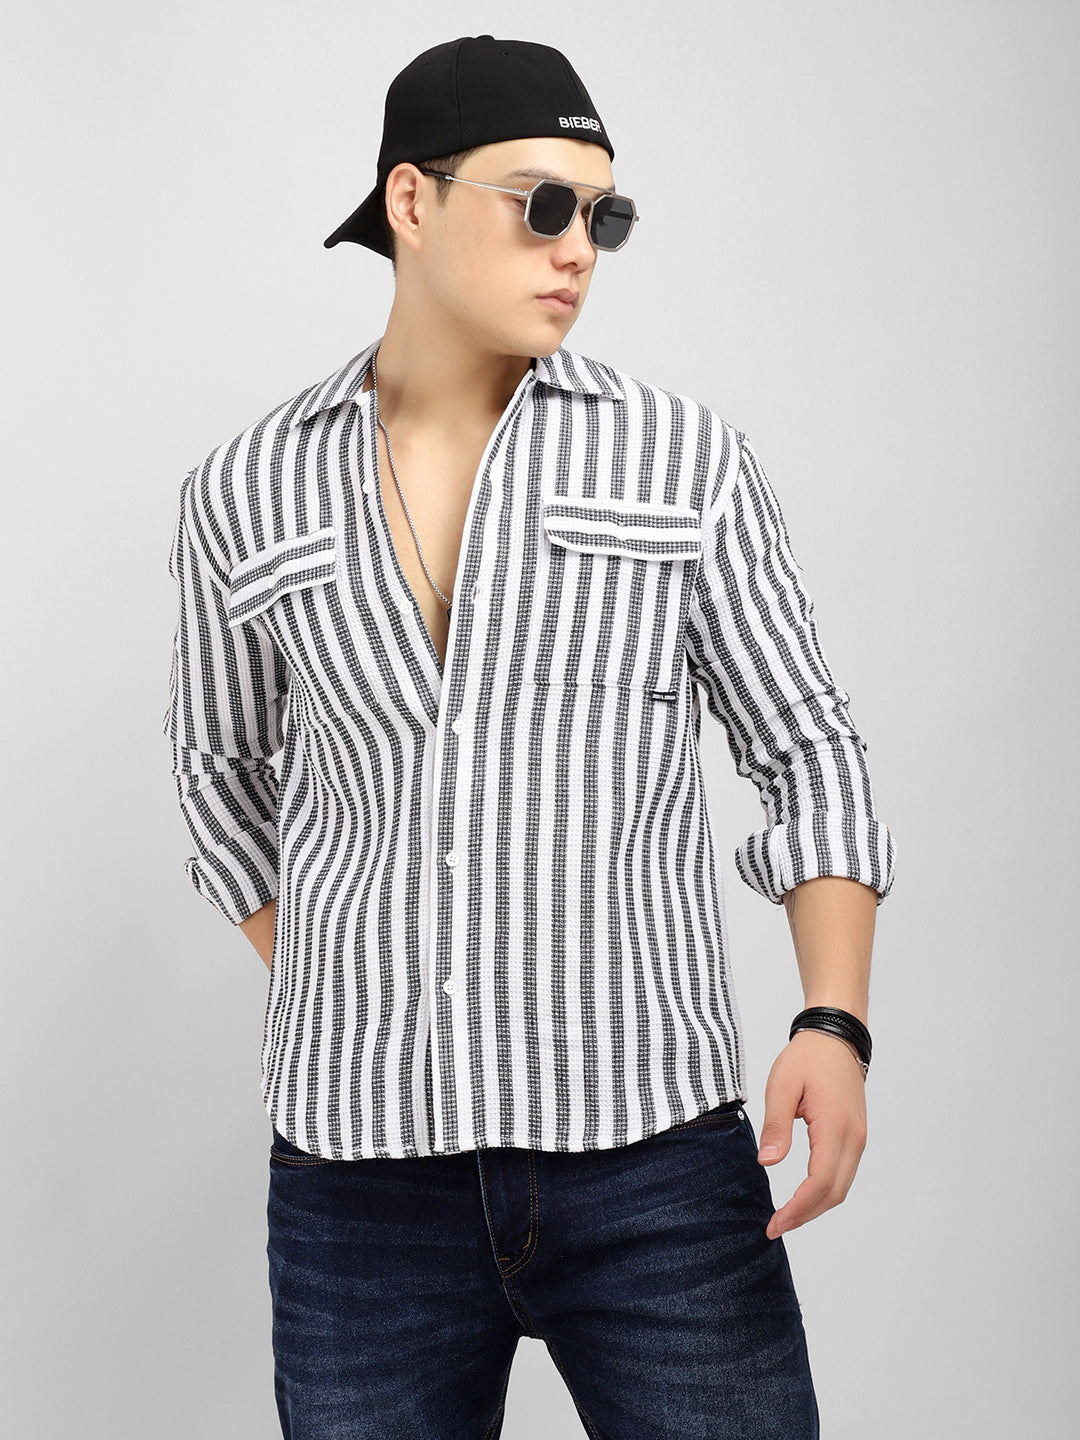 Stripehaven White Striped Shirt